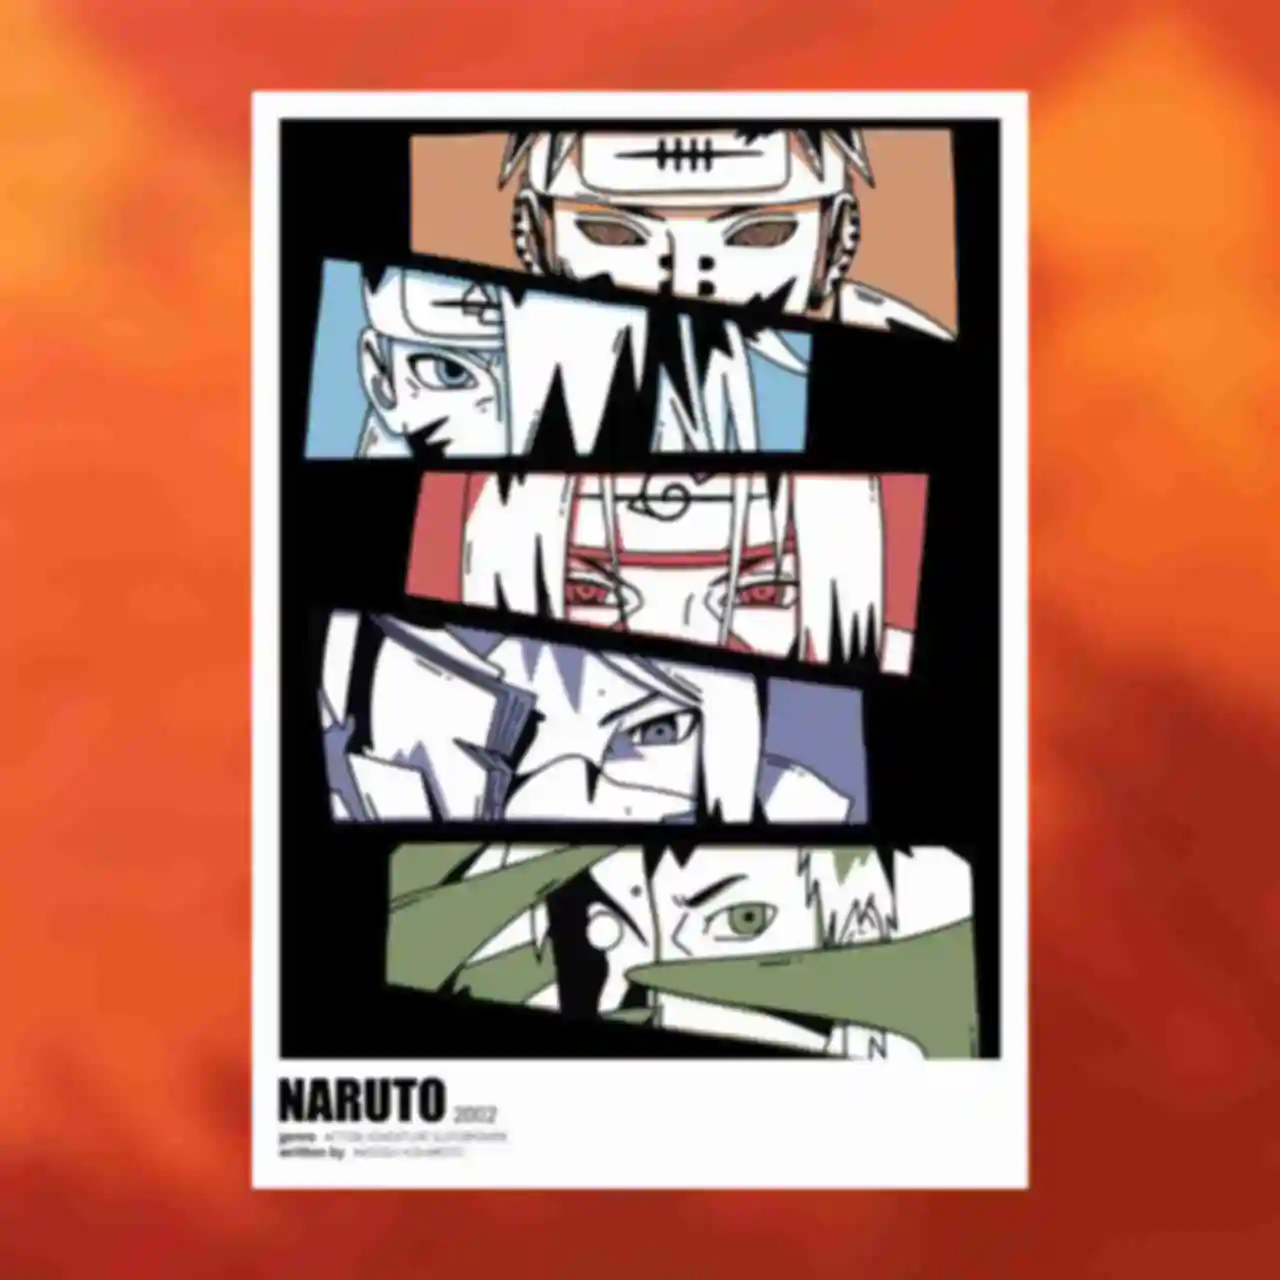 Постер №3 ⦁ Глаза Акацуки ⦁ Плакат Akatsuki ⦁ Сувениры Наруто ⦁ Подарки в стиле аниме Naruto. Фото №87